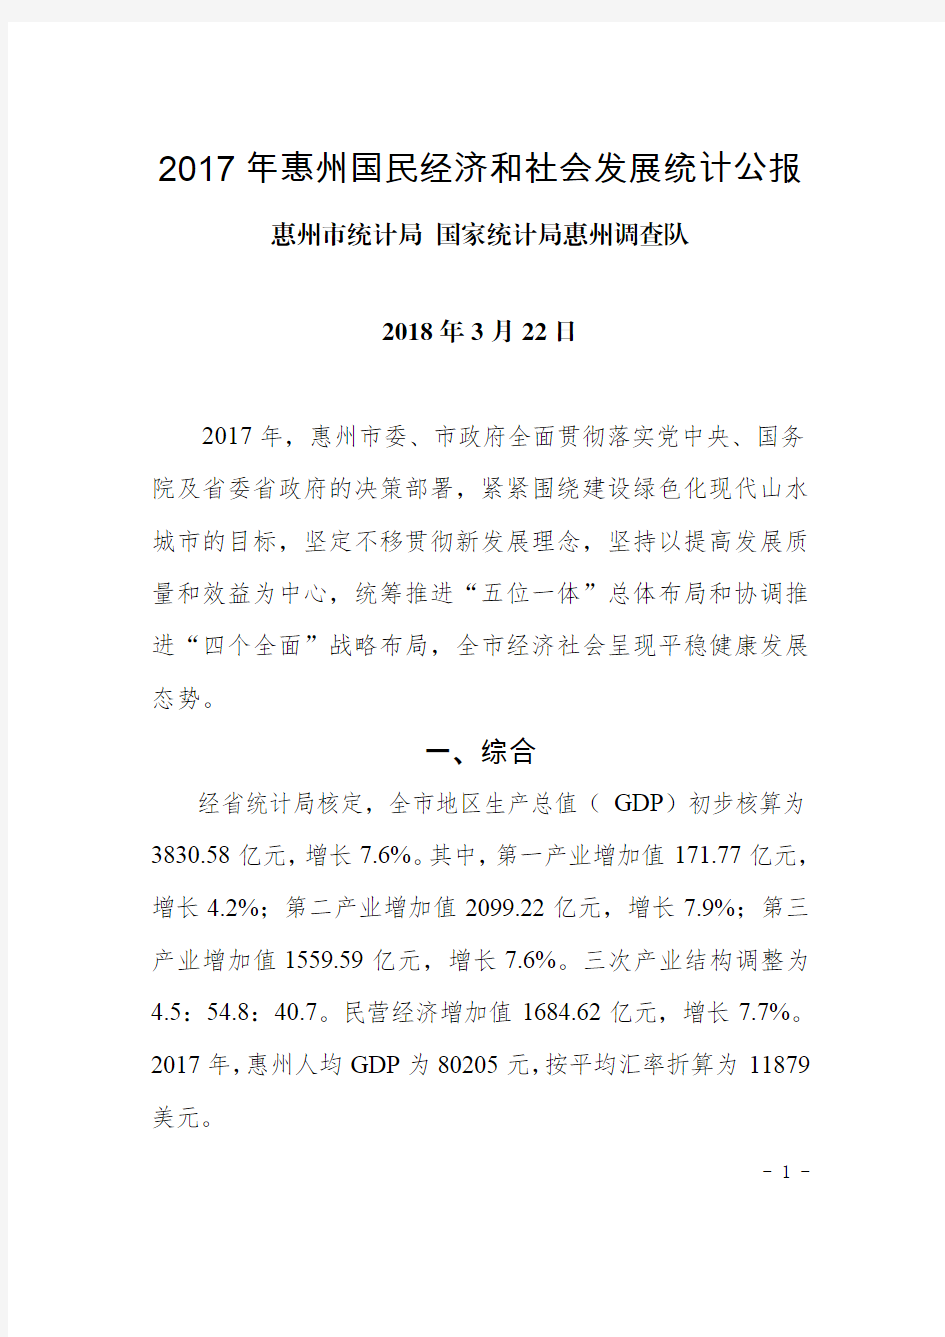 2017年惠州国民经济和社会发展统计公报-Huizhou